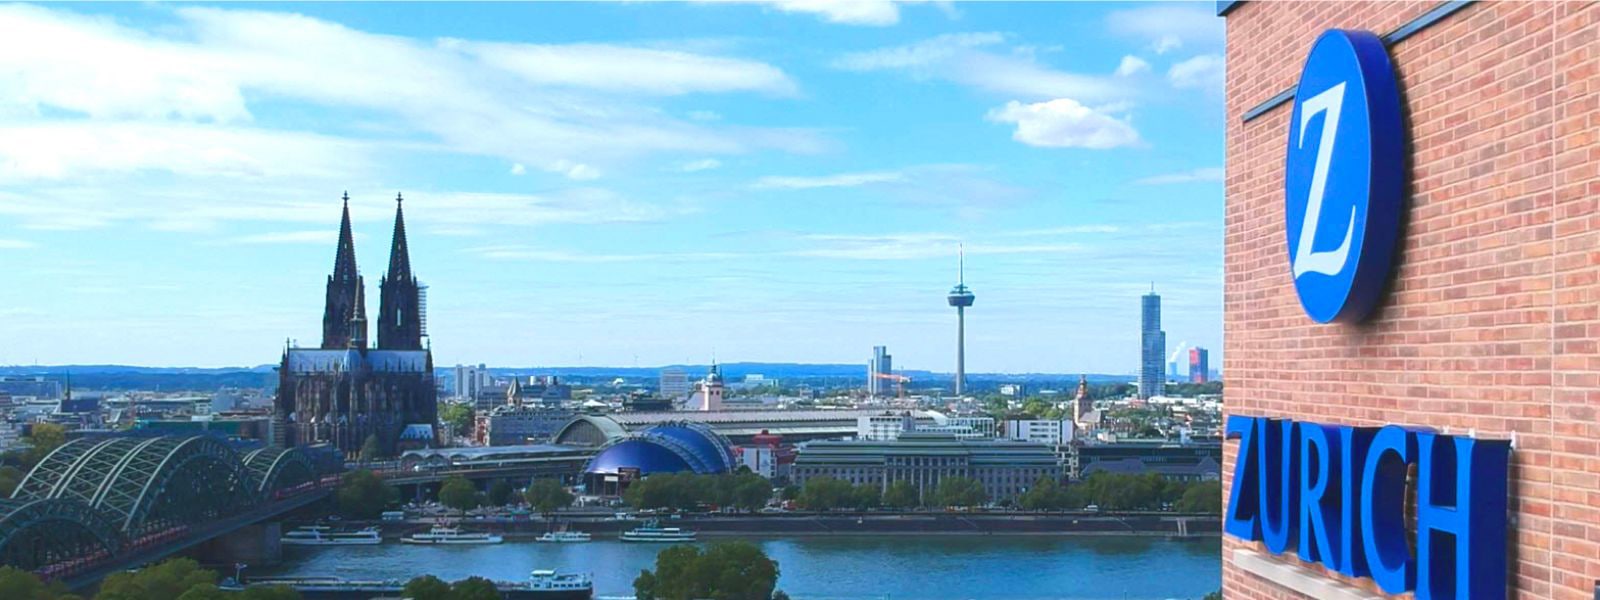 以城市天际线景色为背景的 Zurich Insurance 大楼。